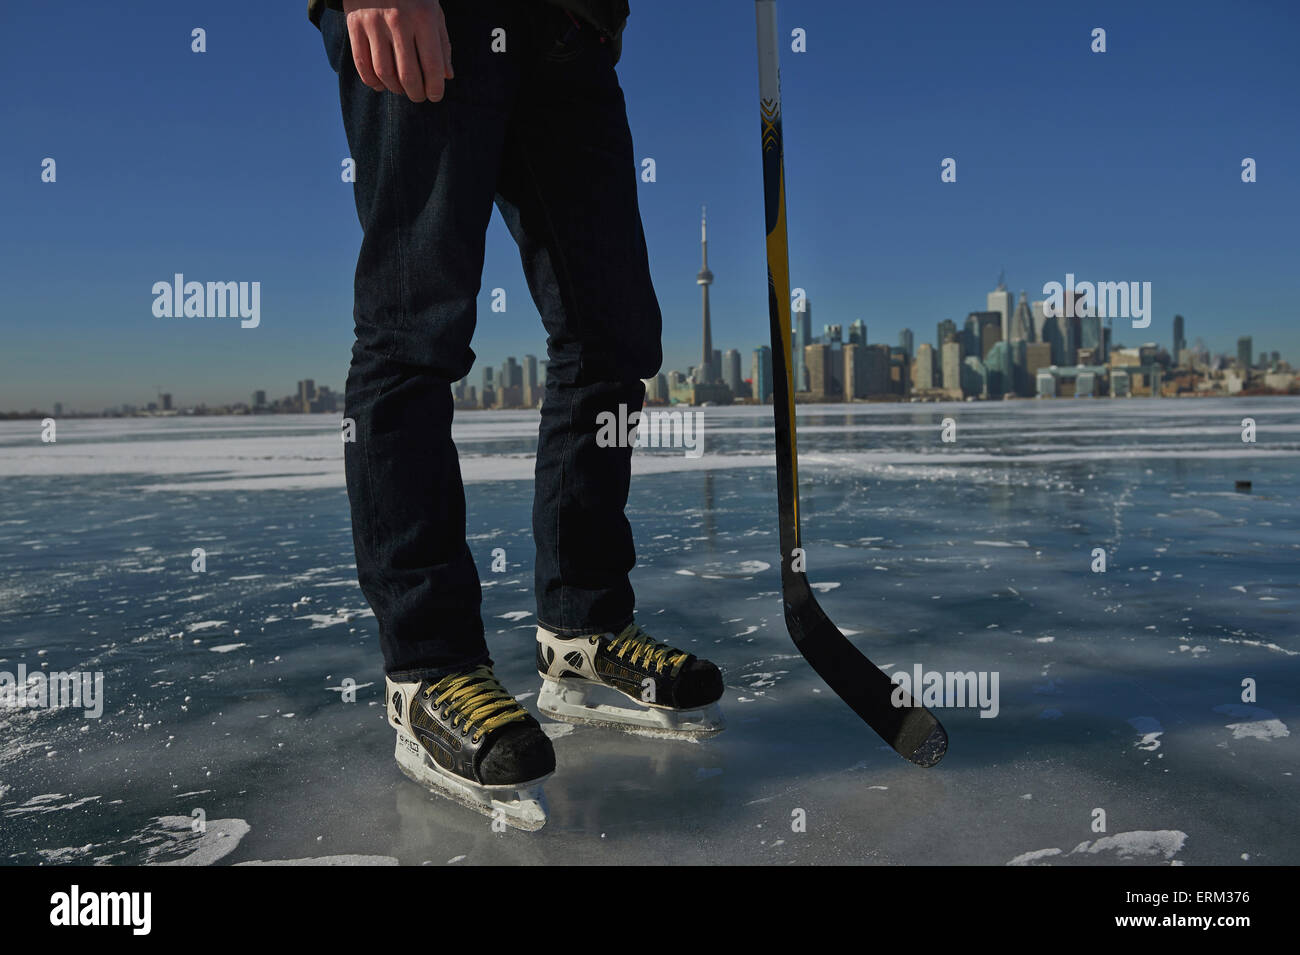 Hockey player and city skyline from Ward's Island; Toronto, Ontario, Canada Stock Photo